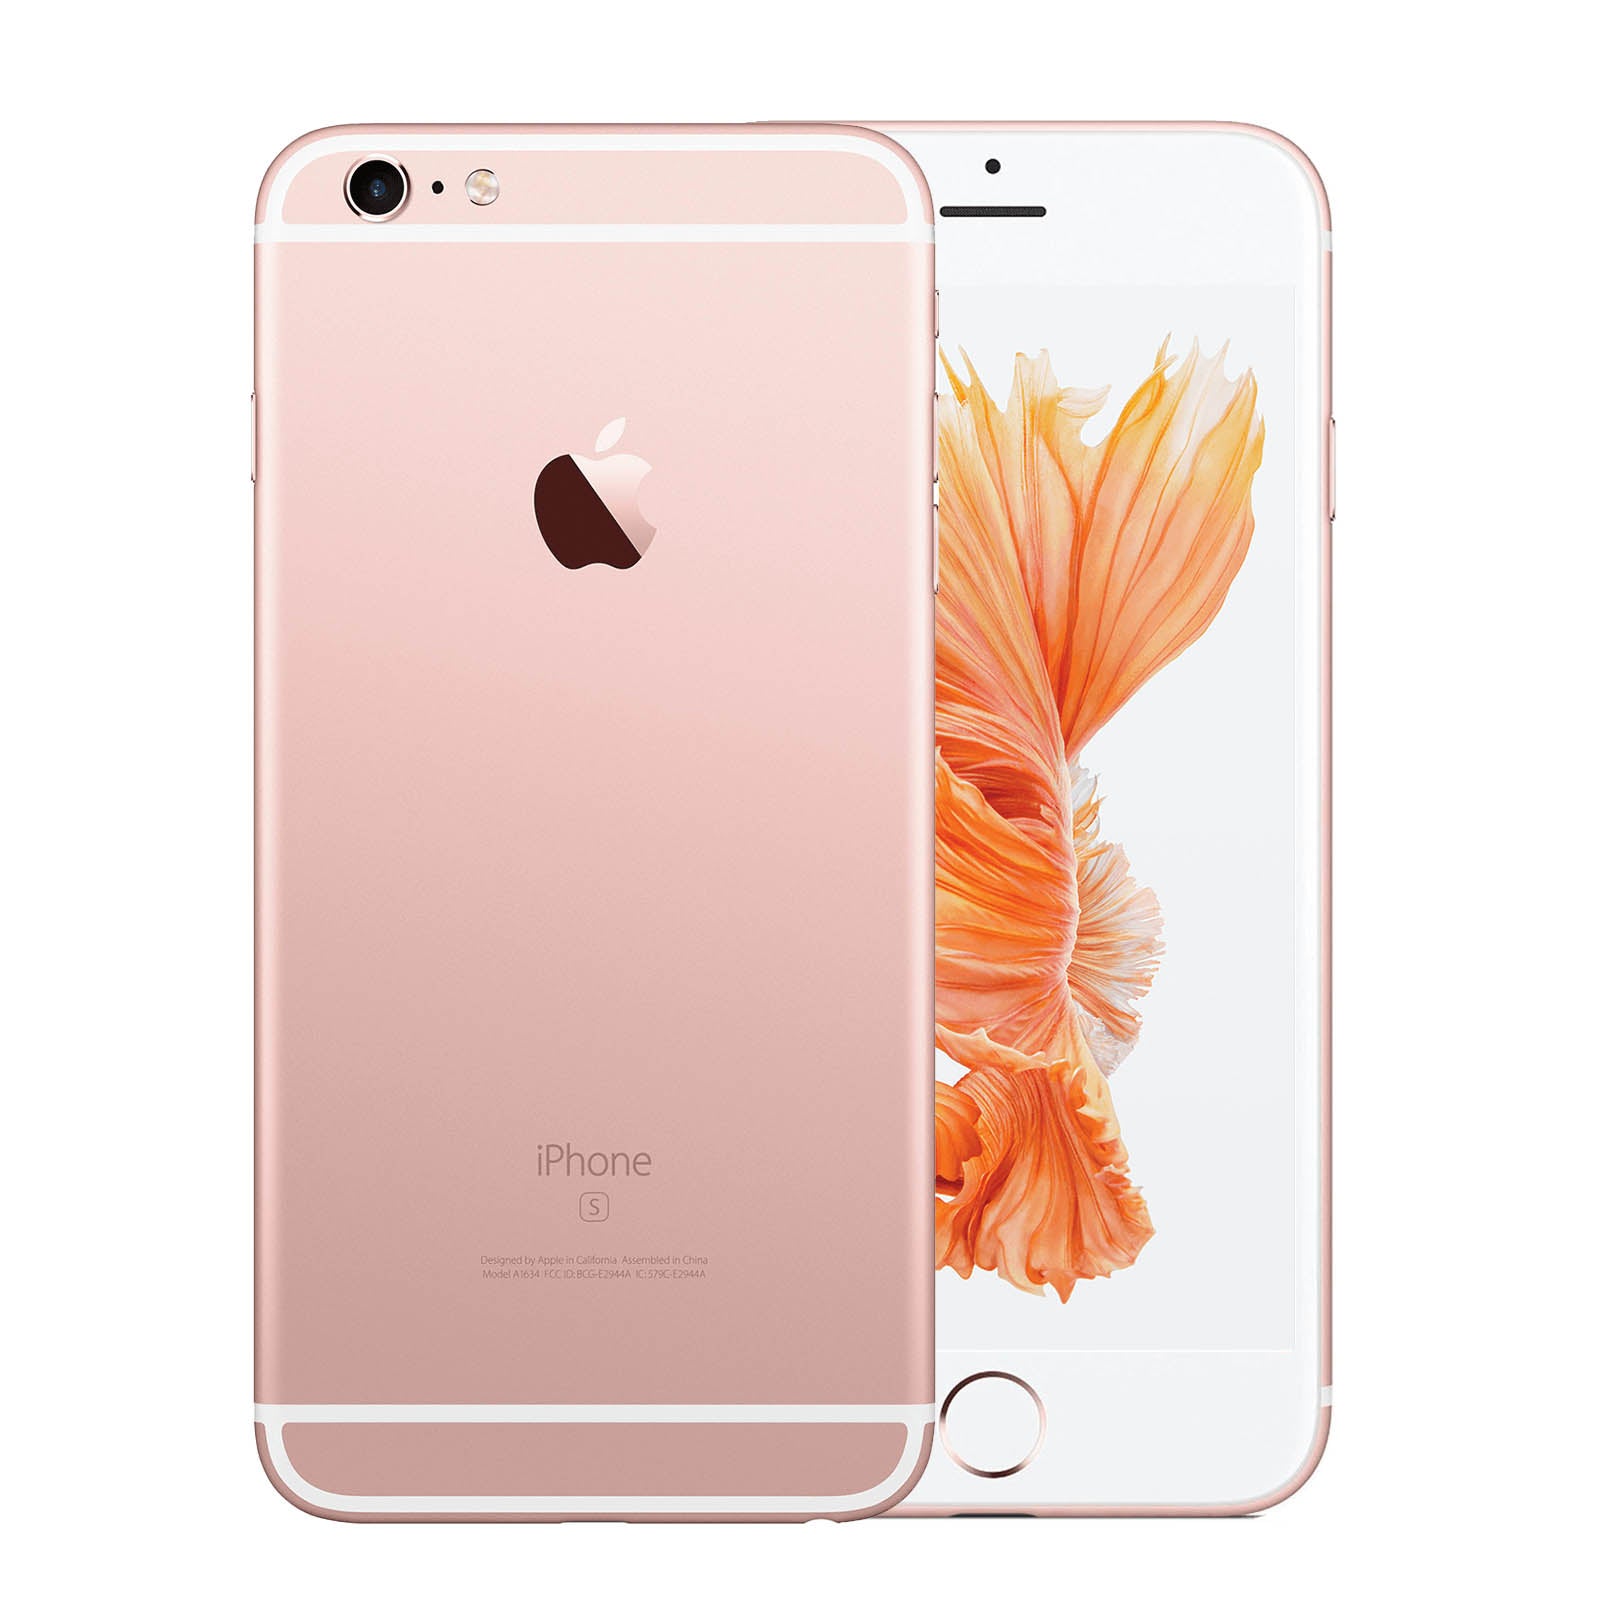 Apple iPhone 6S Plus 64GB Rose Gold Fair - Unlocked